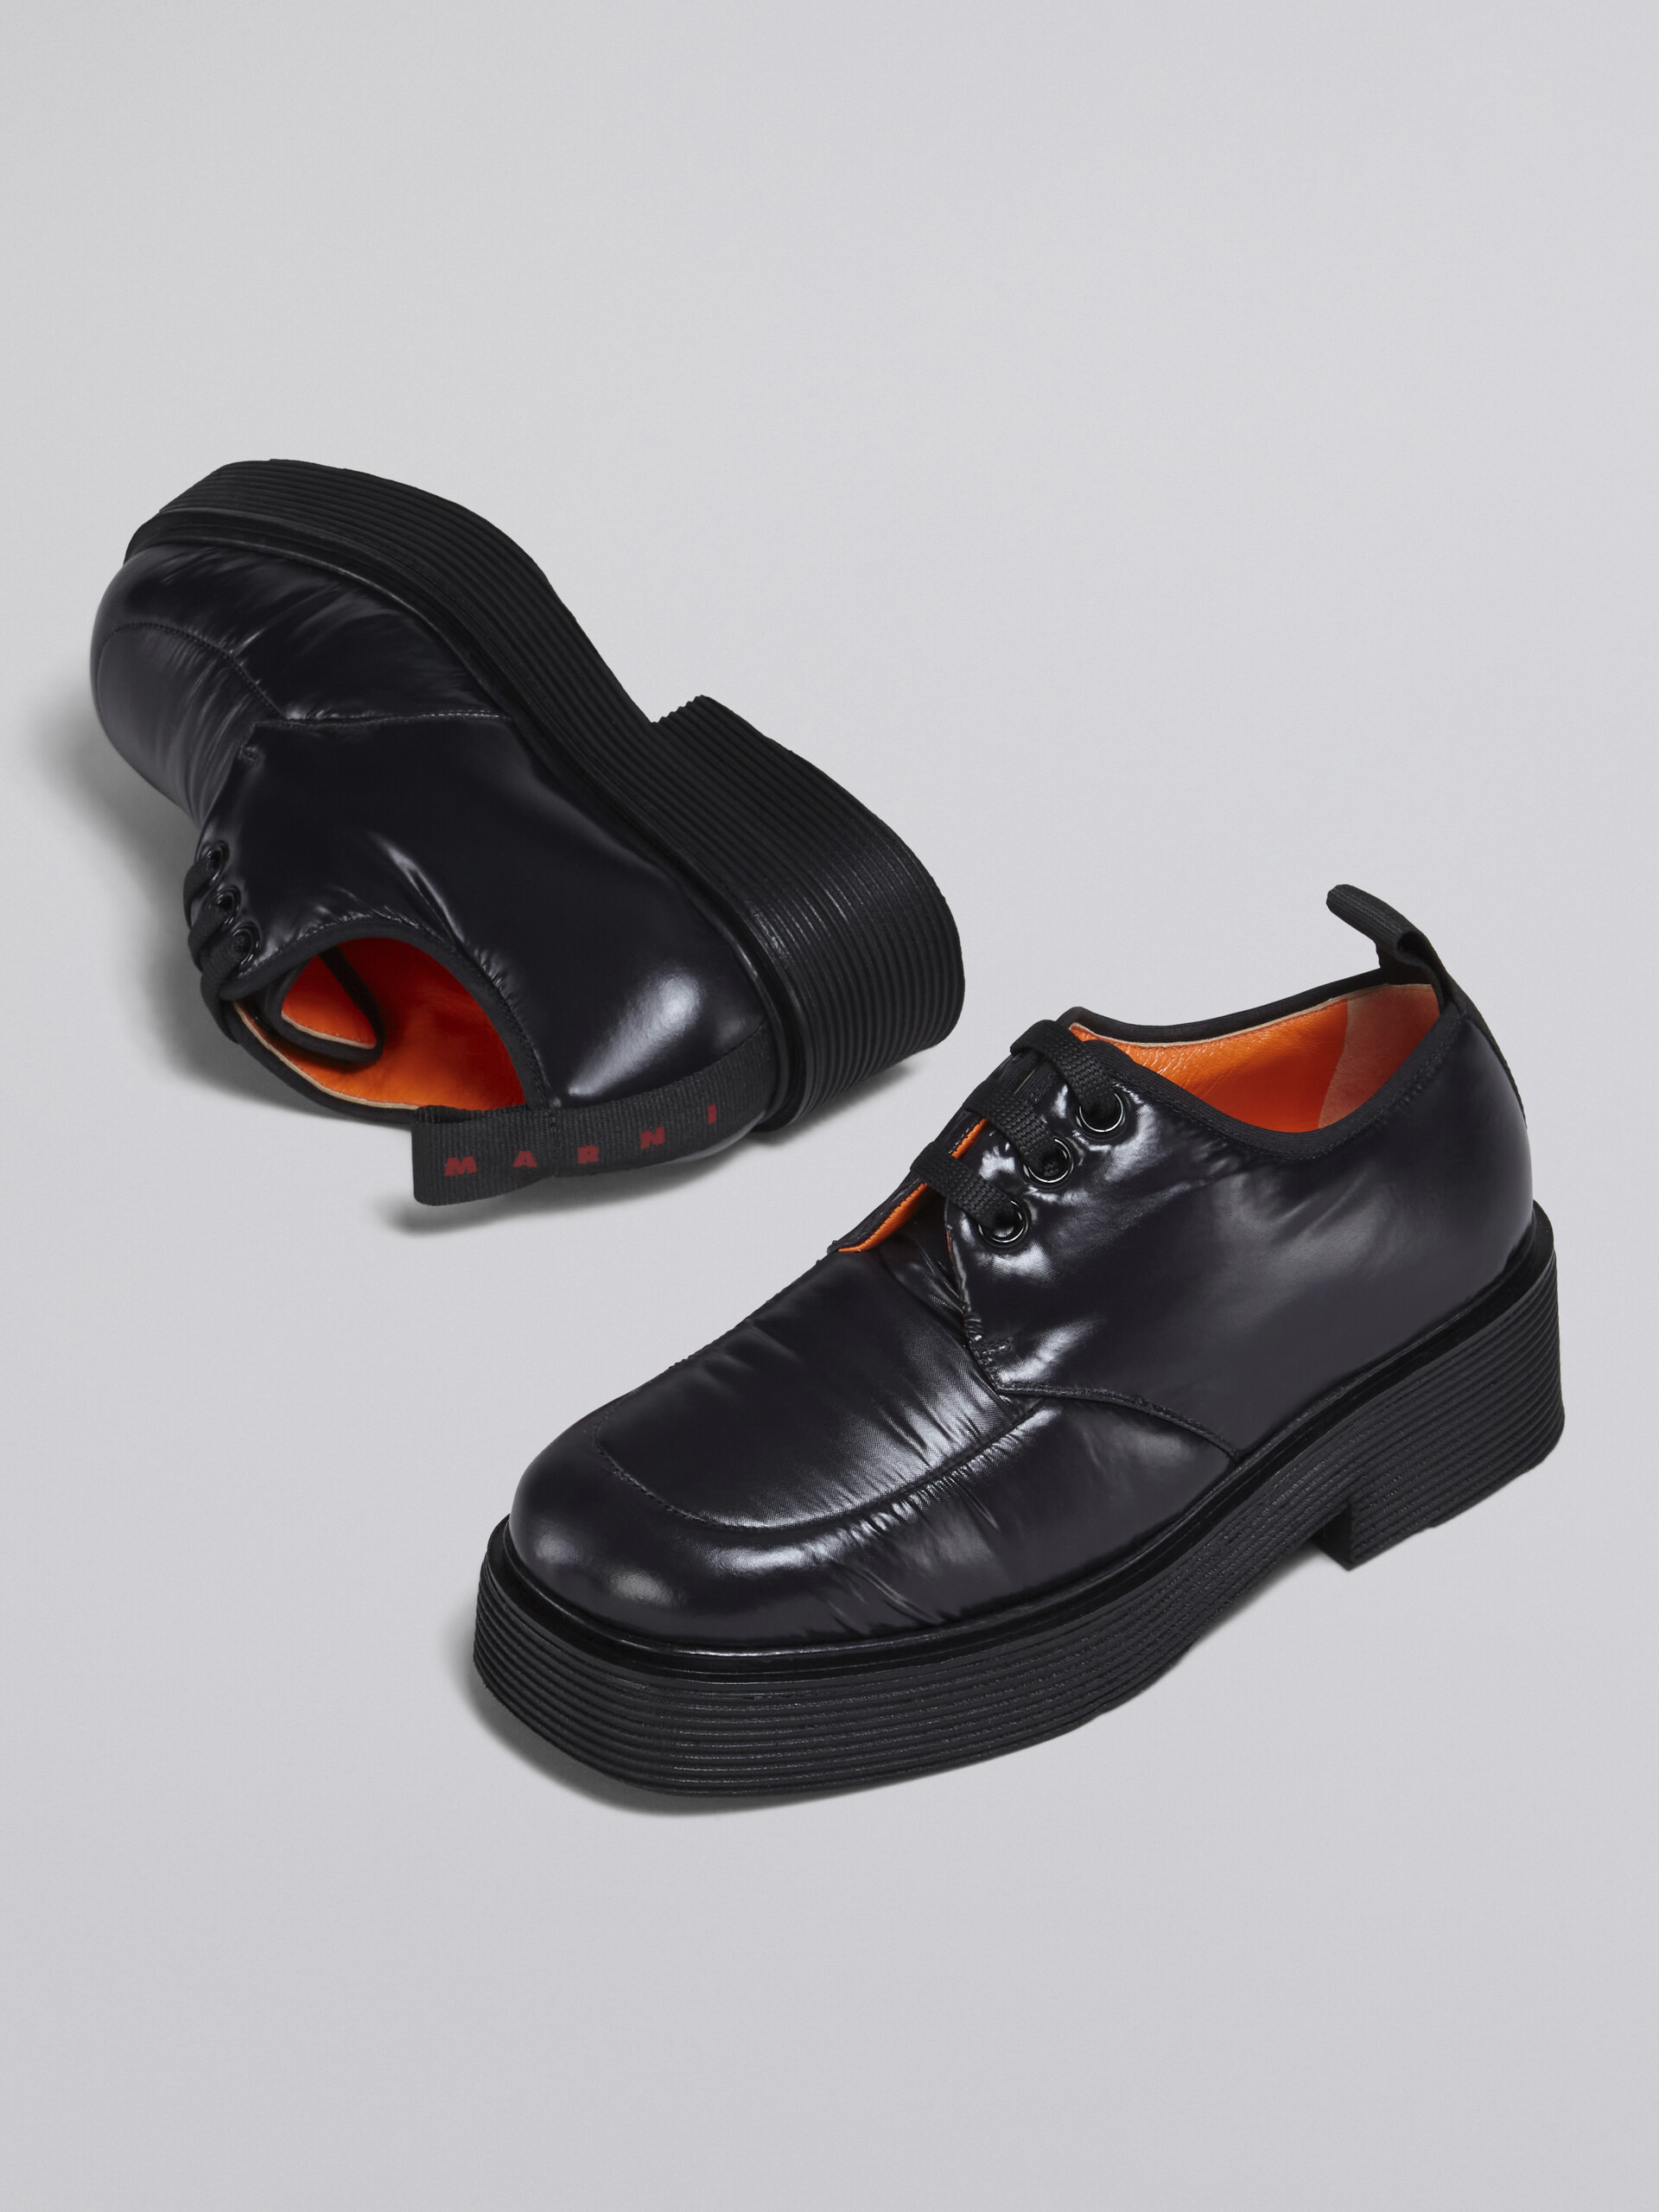 Chaussure à lacet en nylon - Chaussures à Lacets - Image 5